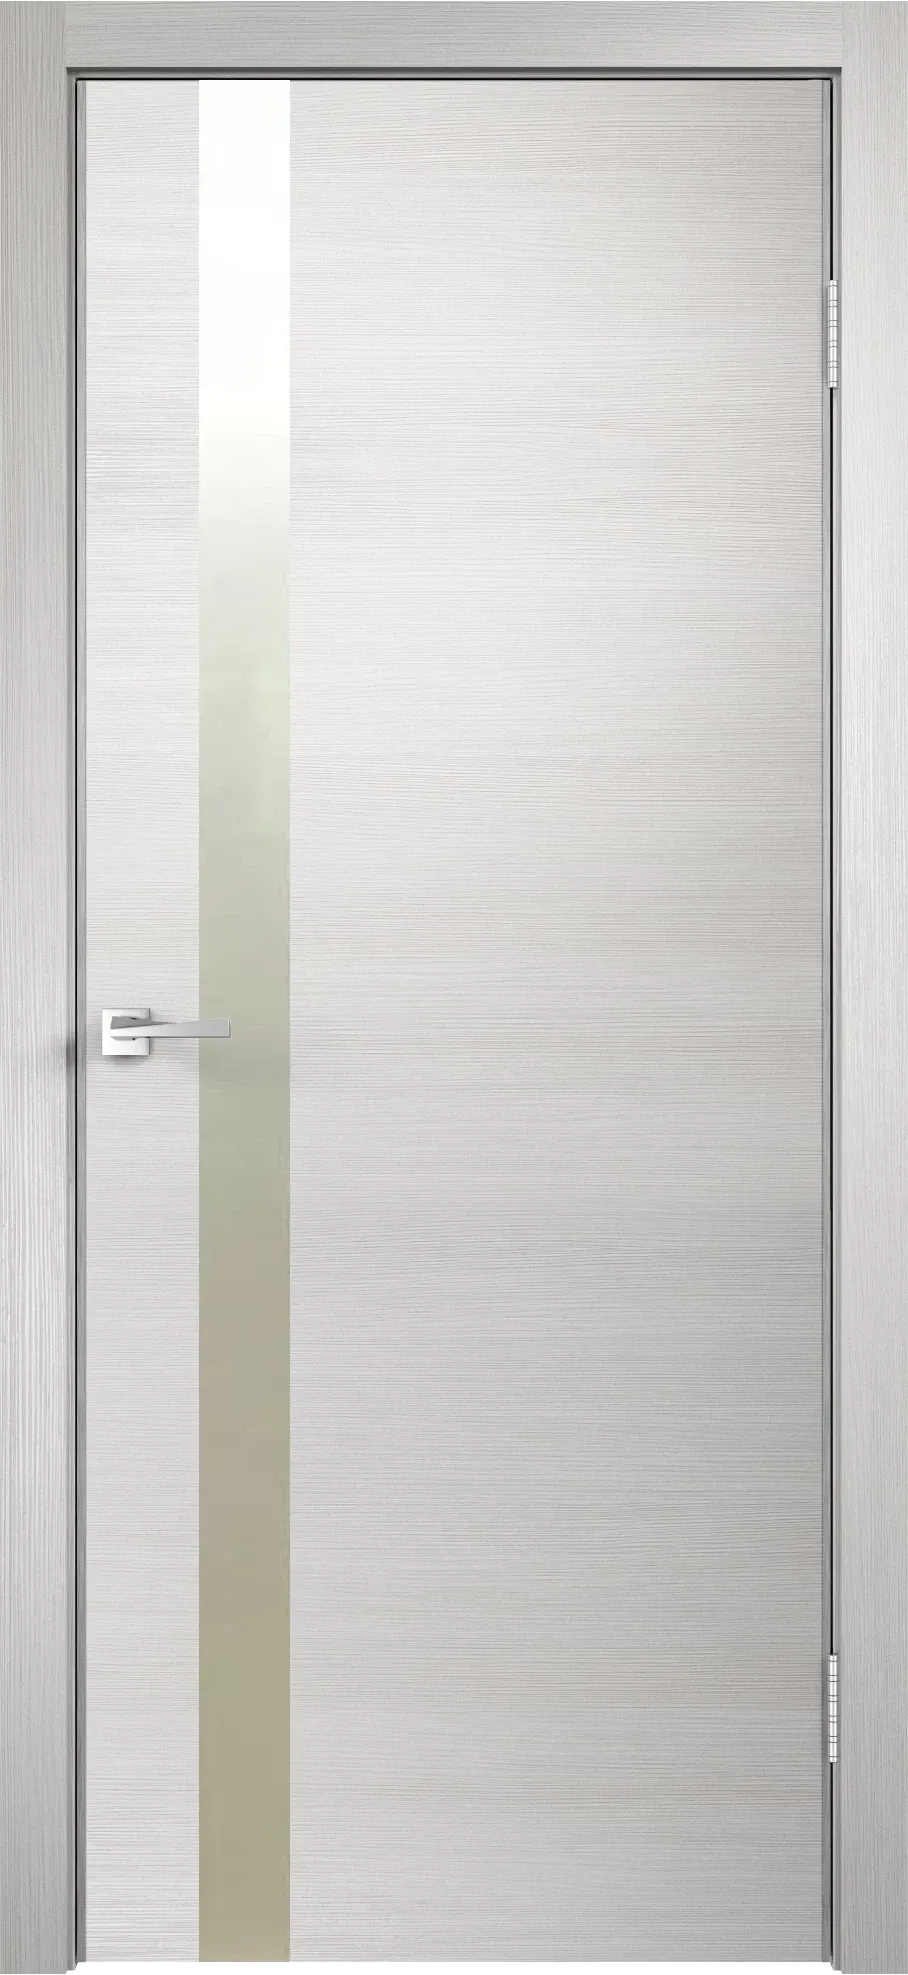 Velldoris межкомнатная дверь экошпон techno облегченное z1 дуб белый поперечный 600Х2000